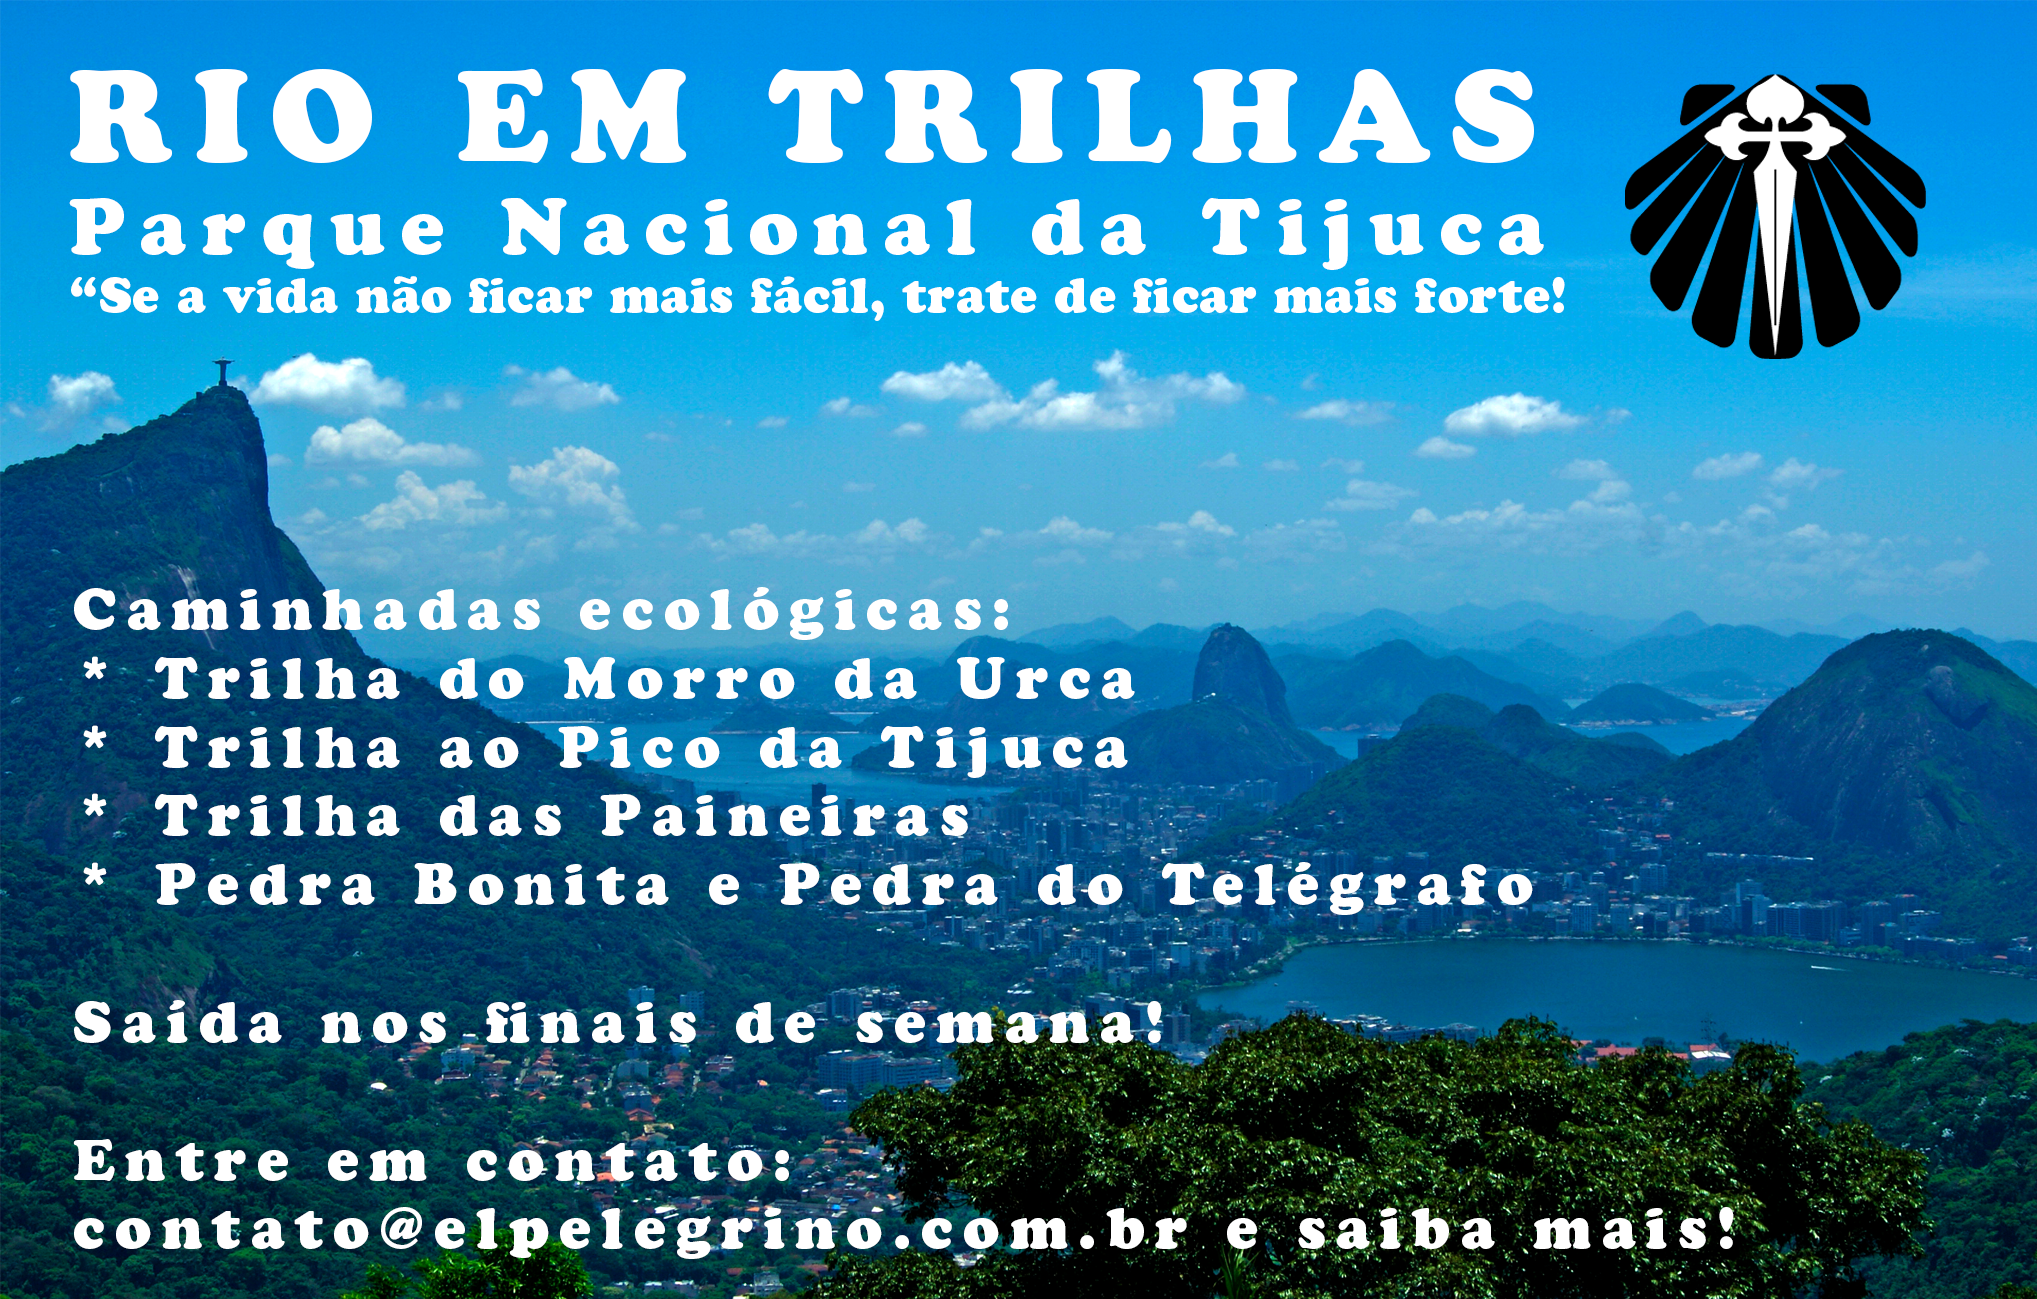 Banner com imagem do Rio de Janeiro